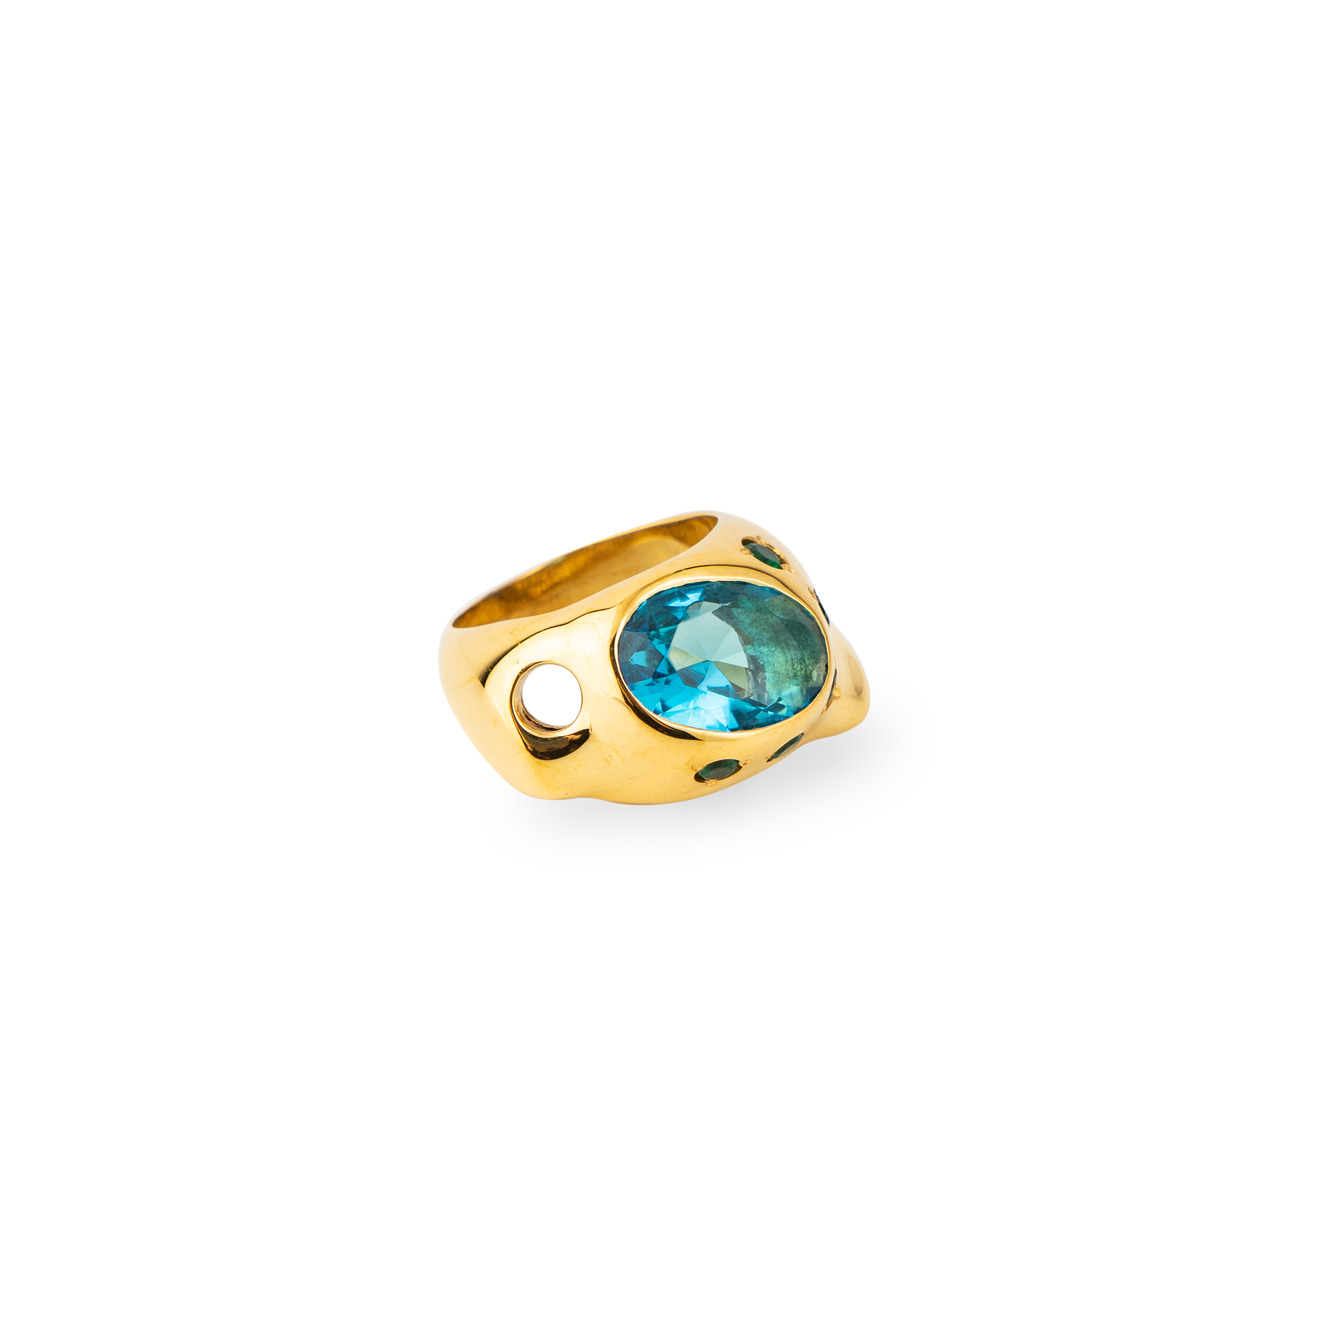 цена Janashia Золотистое кольцо Ava волнообразной формы со вставками из зеленых и голубого кристалла